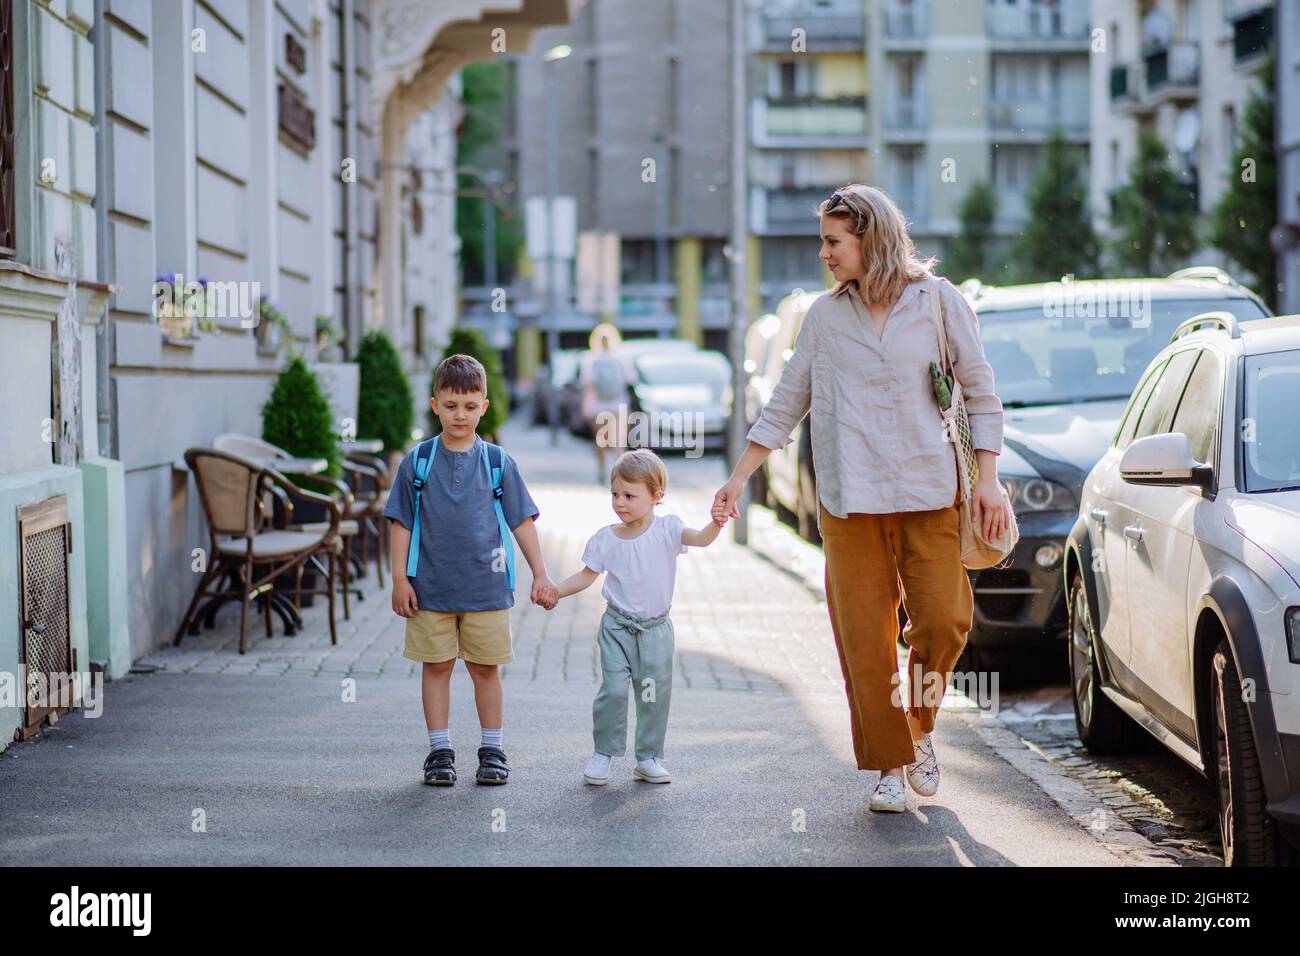 Junge Mutter mit Null-Abfall-Einkaufstasche, die Hände mit ihren Kindern hält und in der Stadtstraße läuft Stockfoto